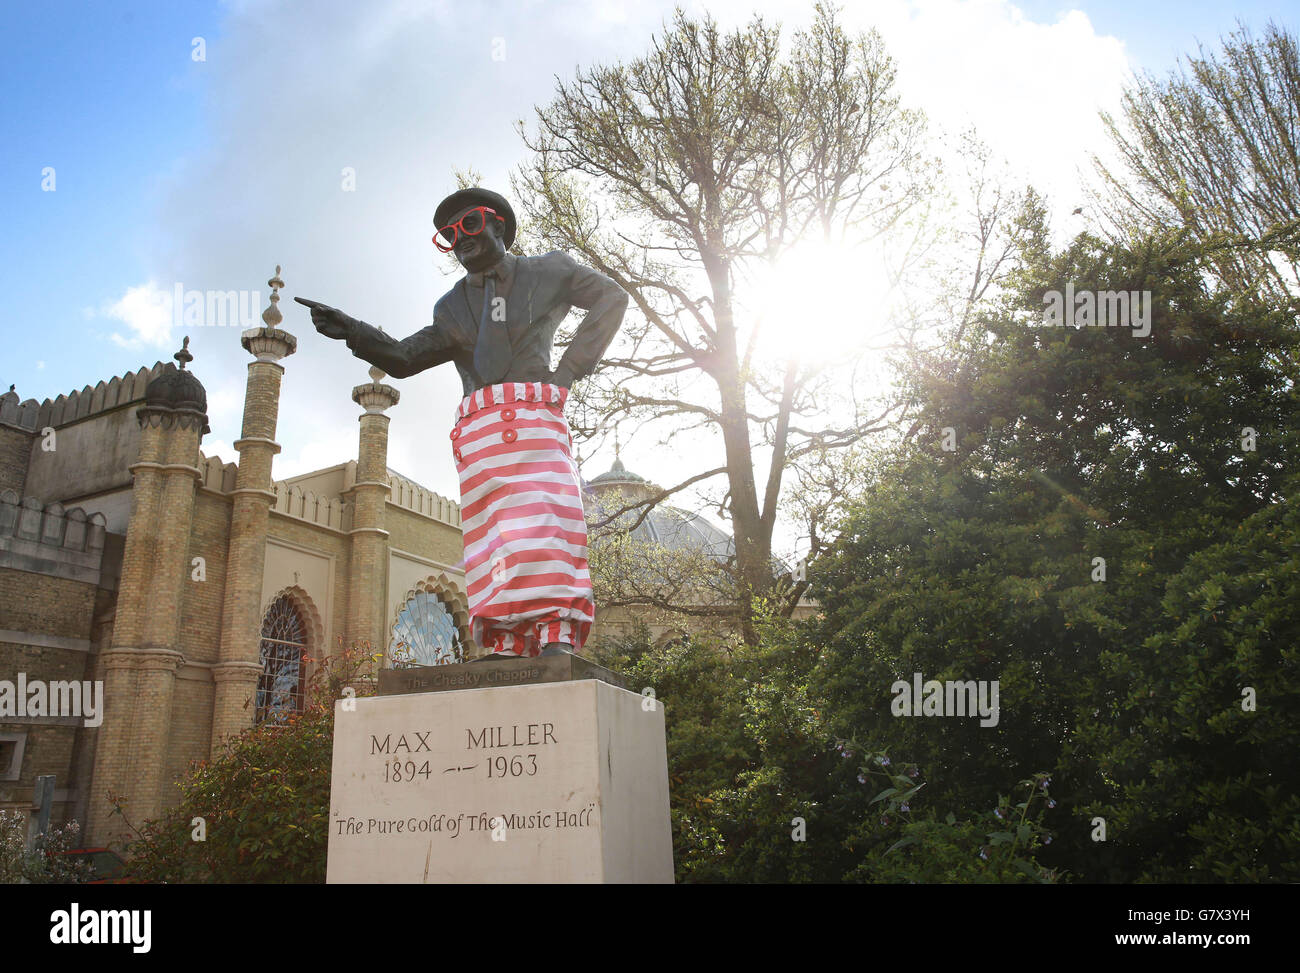 La statua del comico britannico Max Miller, che si trova nella sua città natale di Brighton in Sussex, si vestisce per l'estate da Pimm's in una campagna a livello nazionale in vista del week-end di maggio Bank vacanze. Foto Stock